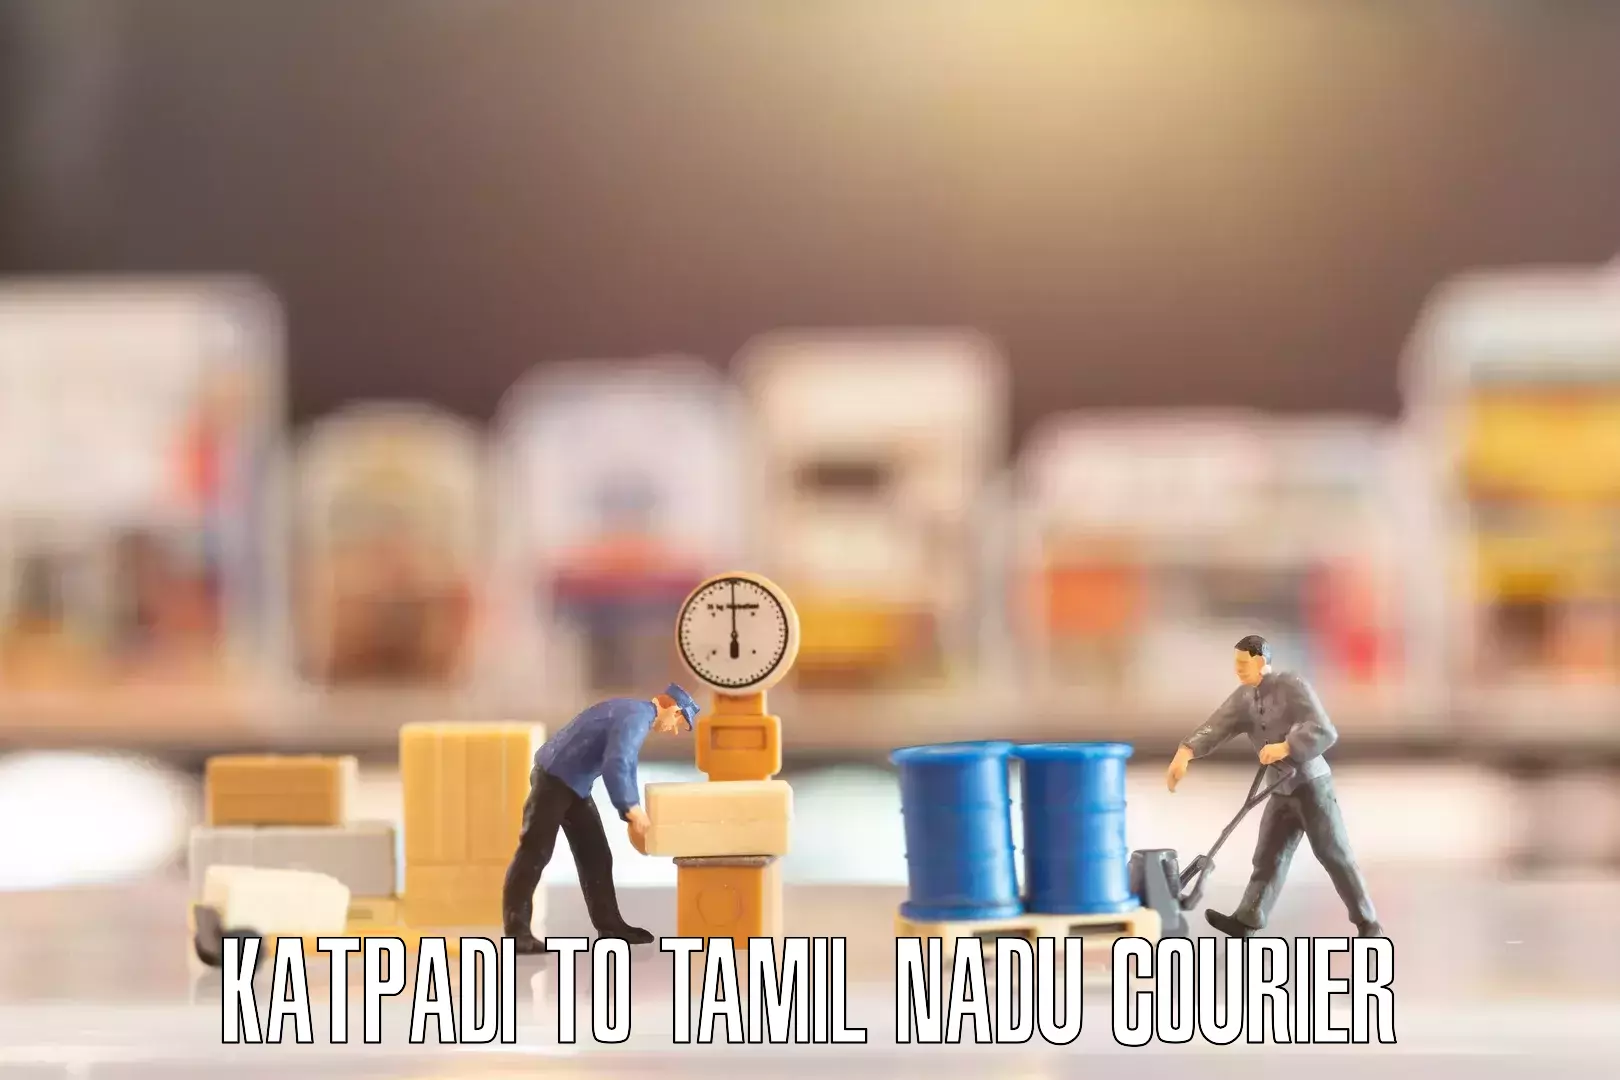 Furniture moving specialists Katpadi to Tamil Nadu